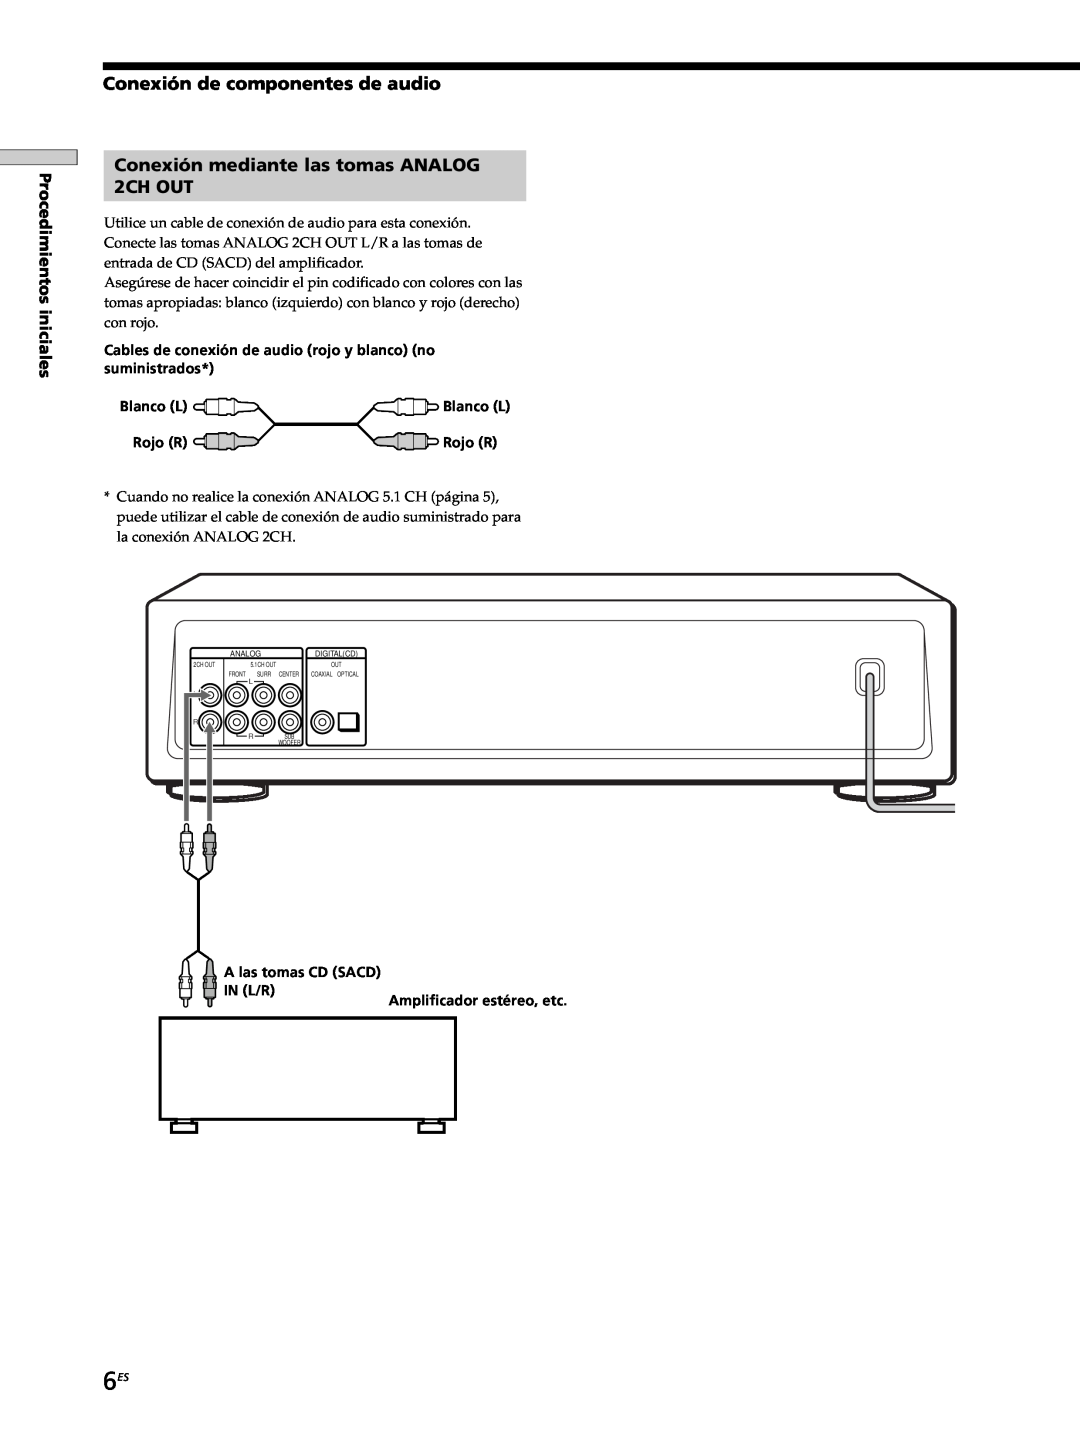 Sony SCD-XB770 operating instructions Conexión de componentes de audio, Conexión mediante las tomas ANALOG 2CH OUT, Rojo R 